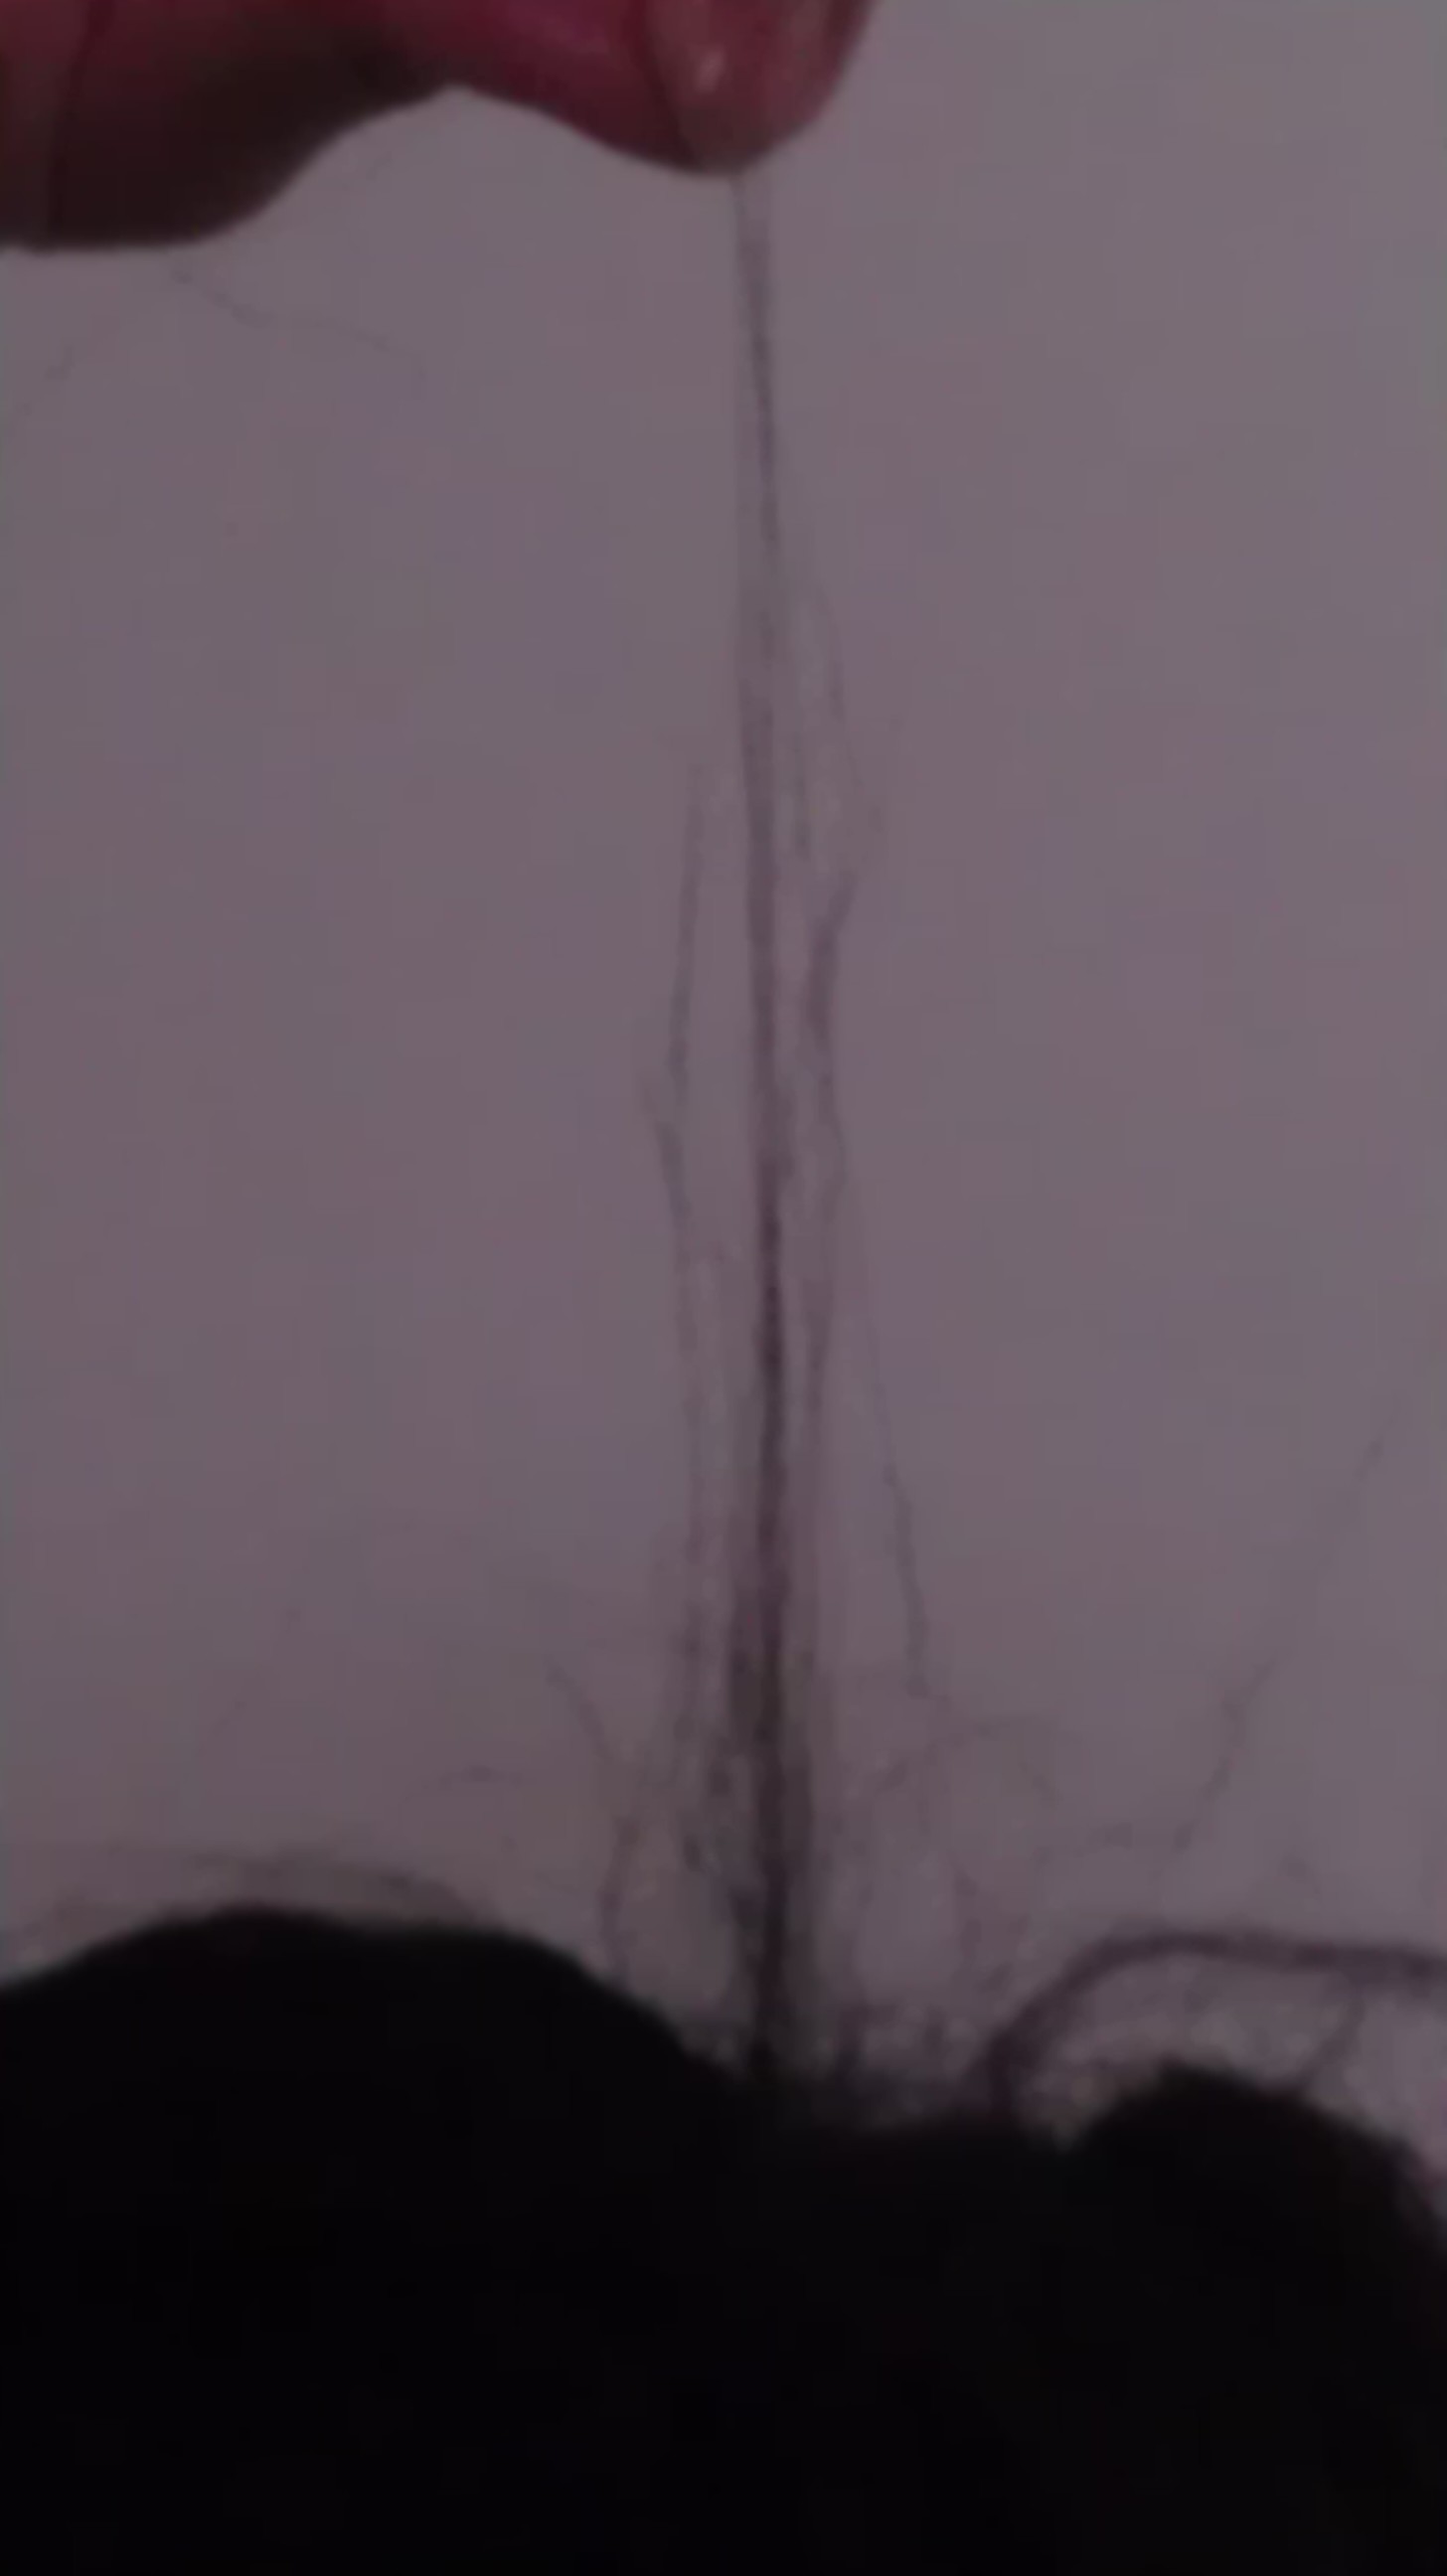 hair setback crown breakage for having tangled hair